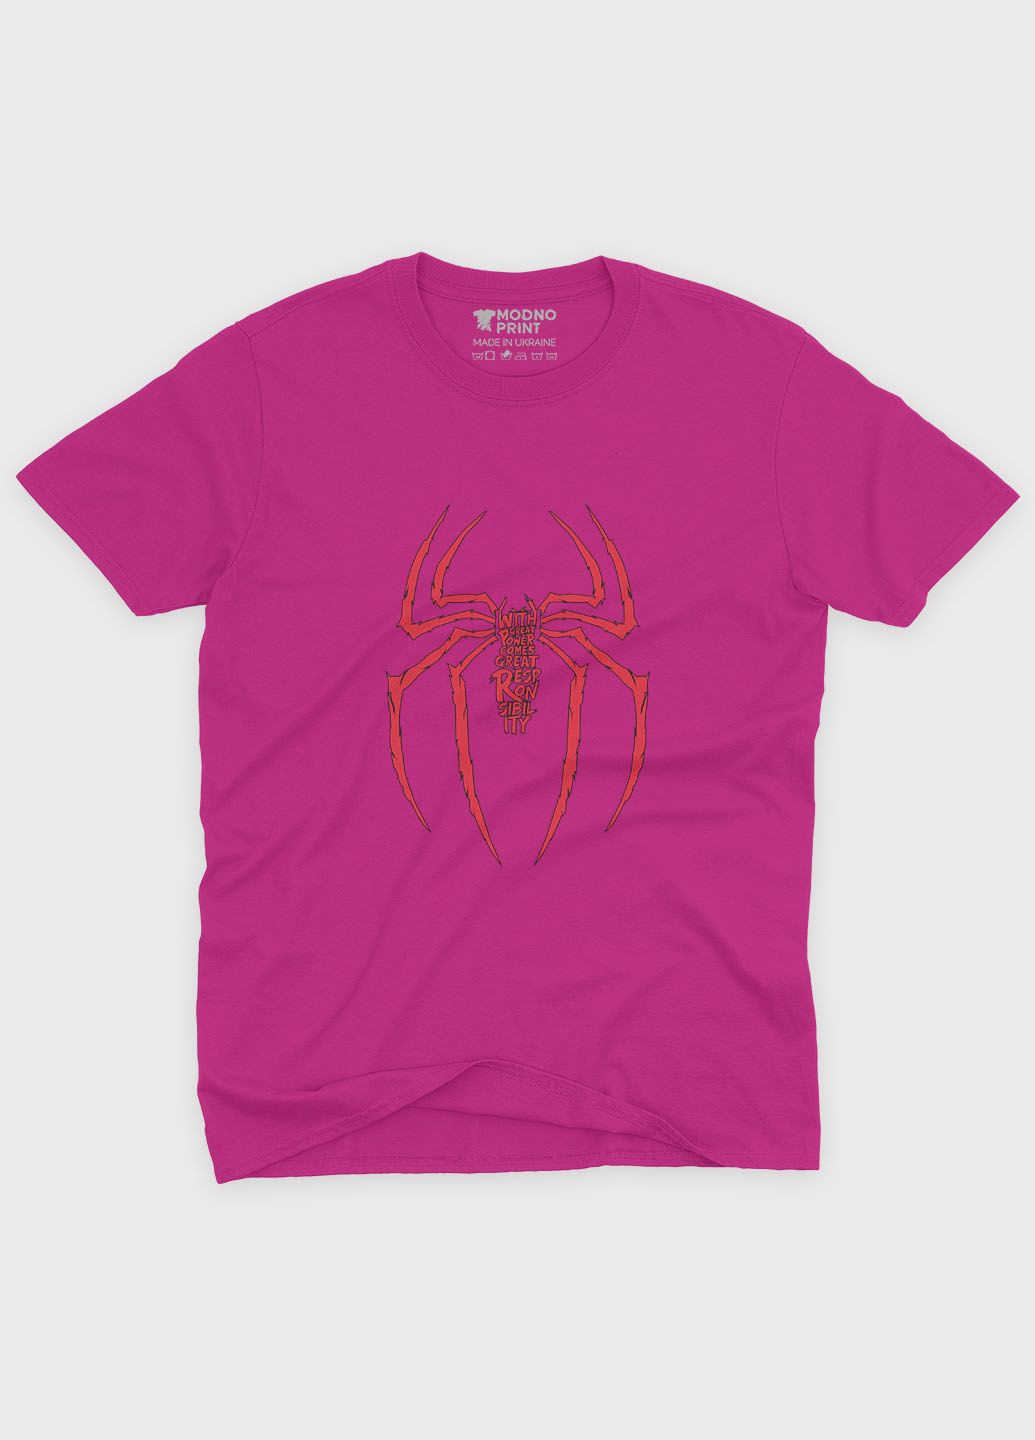 Розовая демисезонная футболка для мальчика с принтом супергероя - человек-паук (ts001-1-fuxj-006-014-046-b) Modno